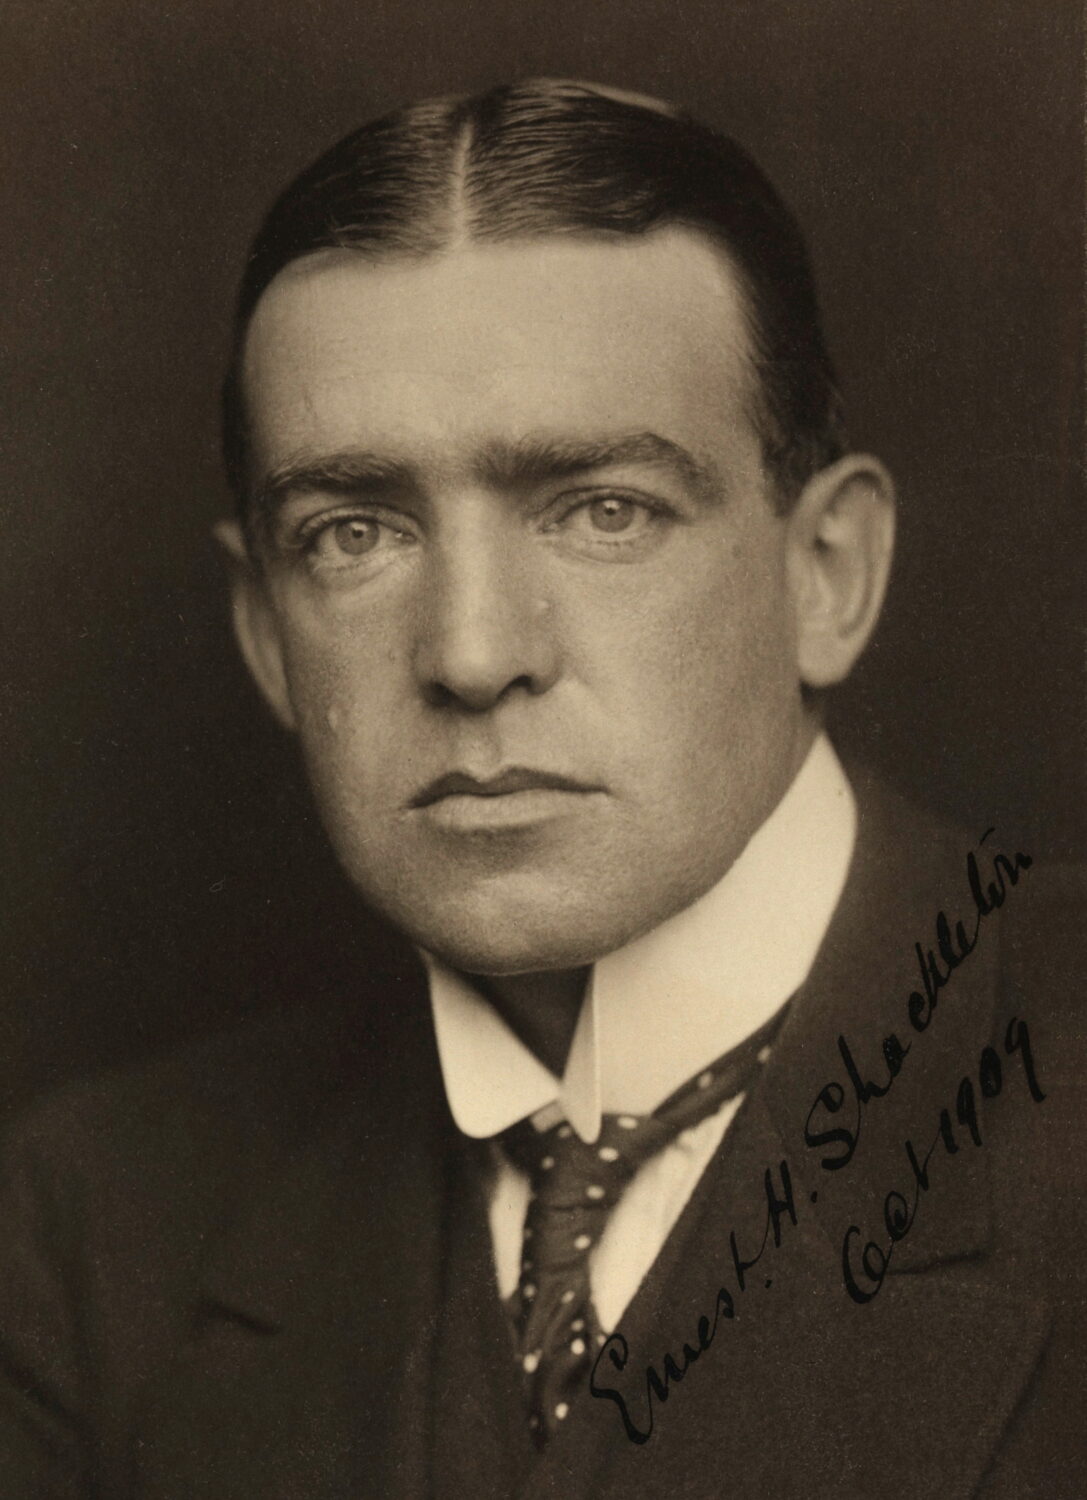 Une photo de Shackleton prise en sépia. Il regarde la caméra de face. Ses cheveux sont graissés et séparés par une ligne bien visible au centre de son crâne.